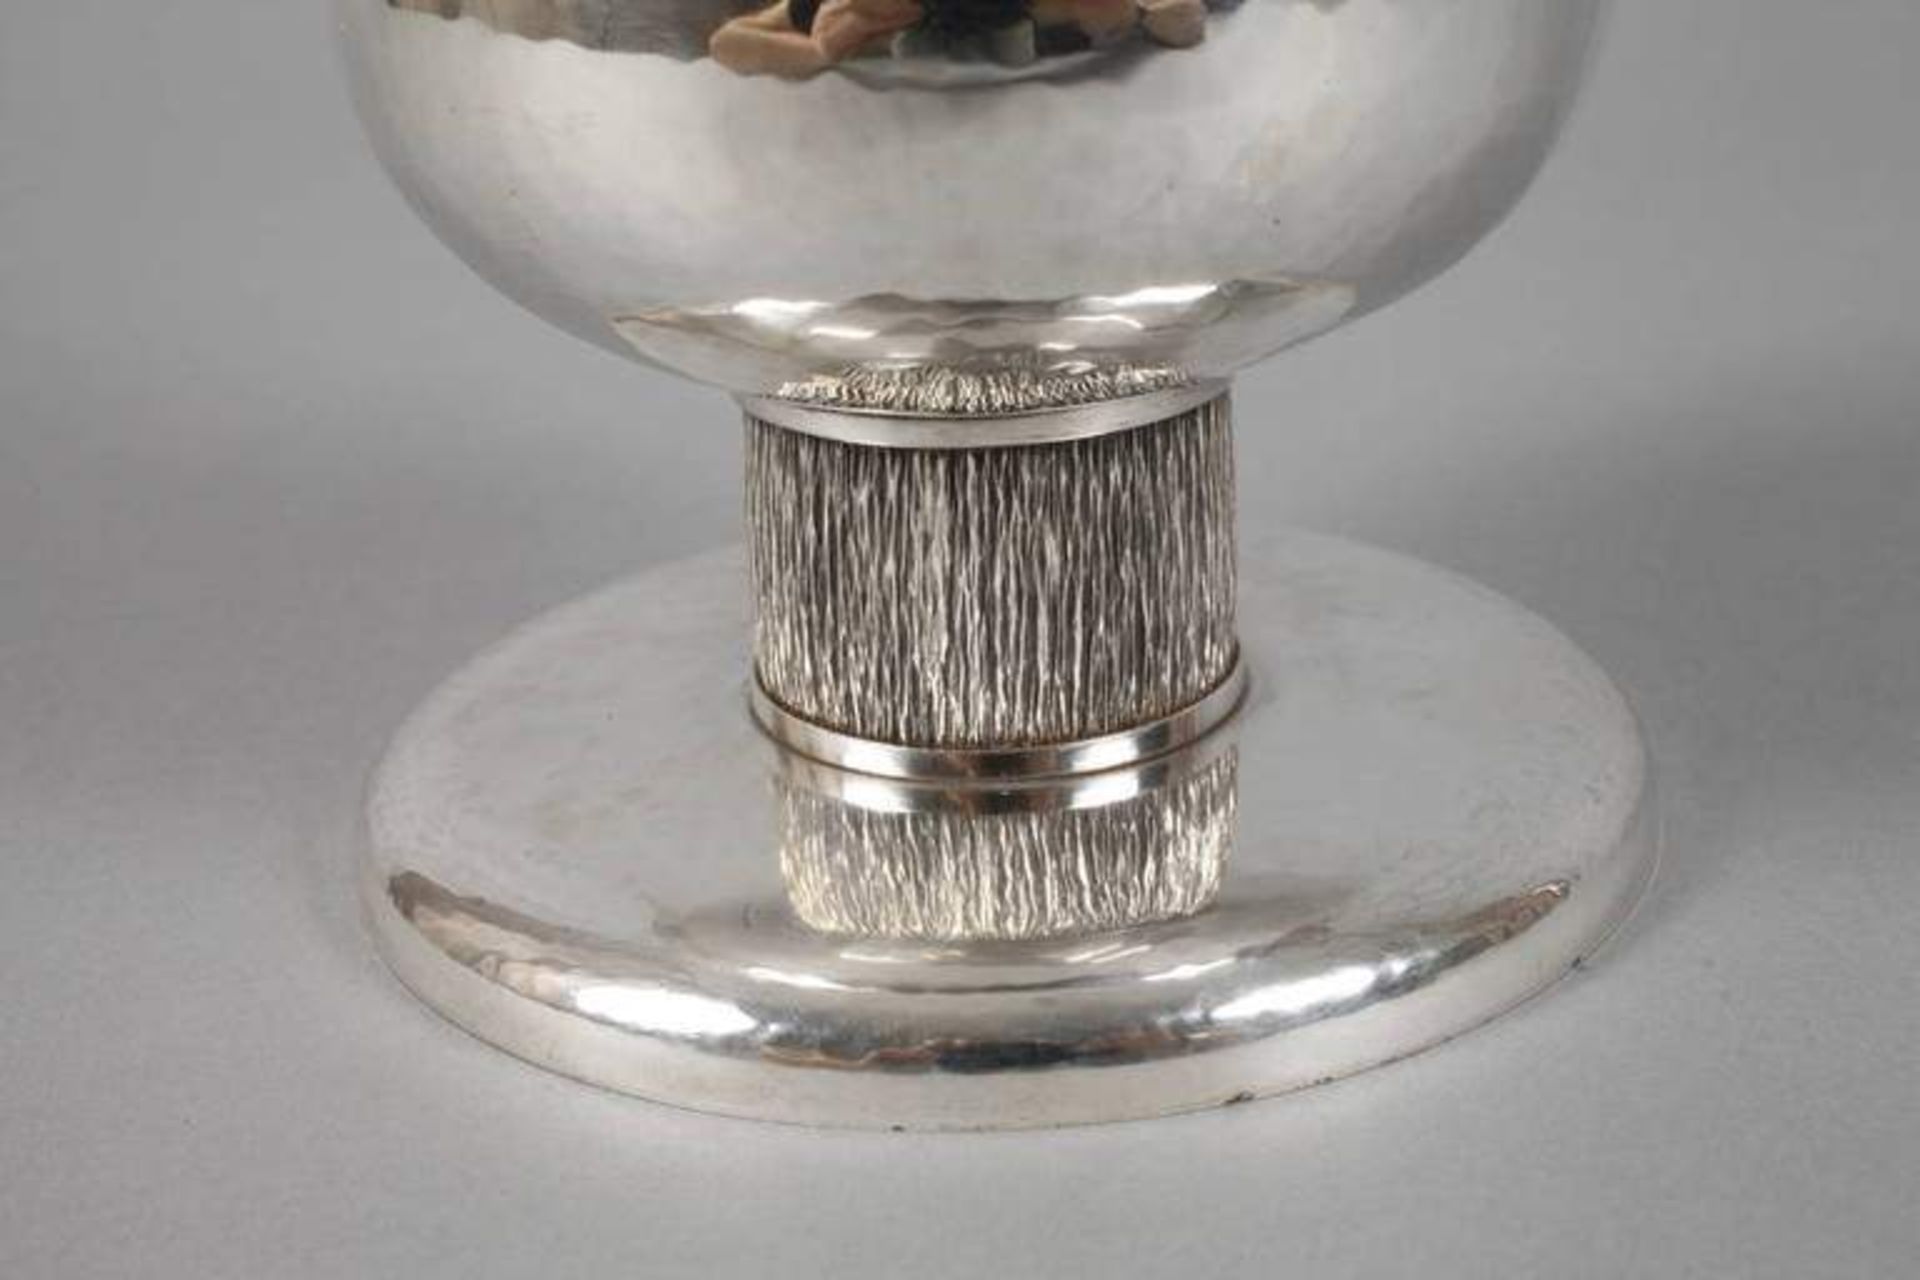 Silberpokal wohl Goldschmied Max Götte Augsburg, 1930er Jahre, gestempelt Halbmond, Krone, 835, - Bild 2 aus 3